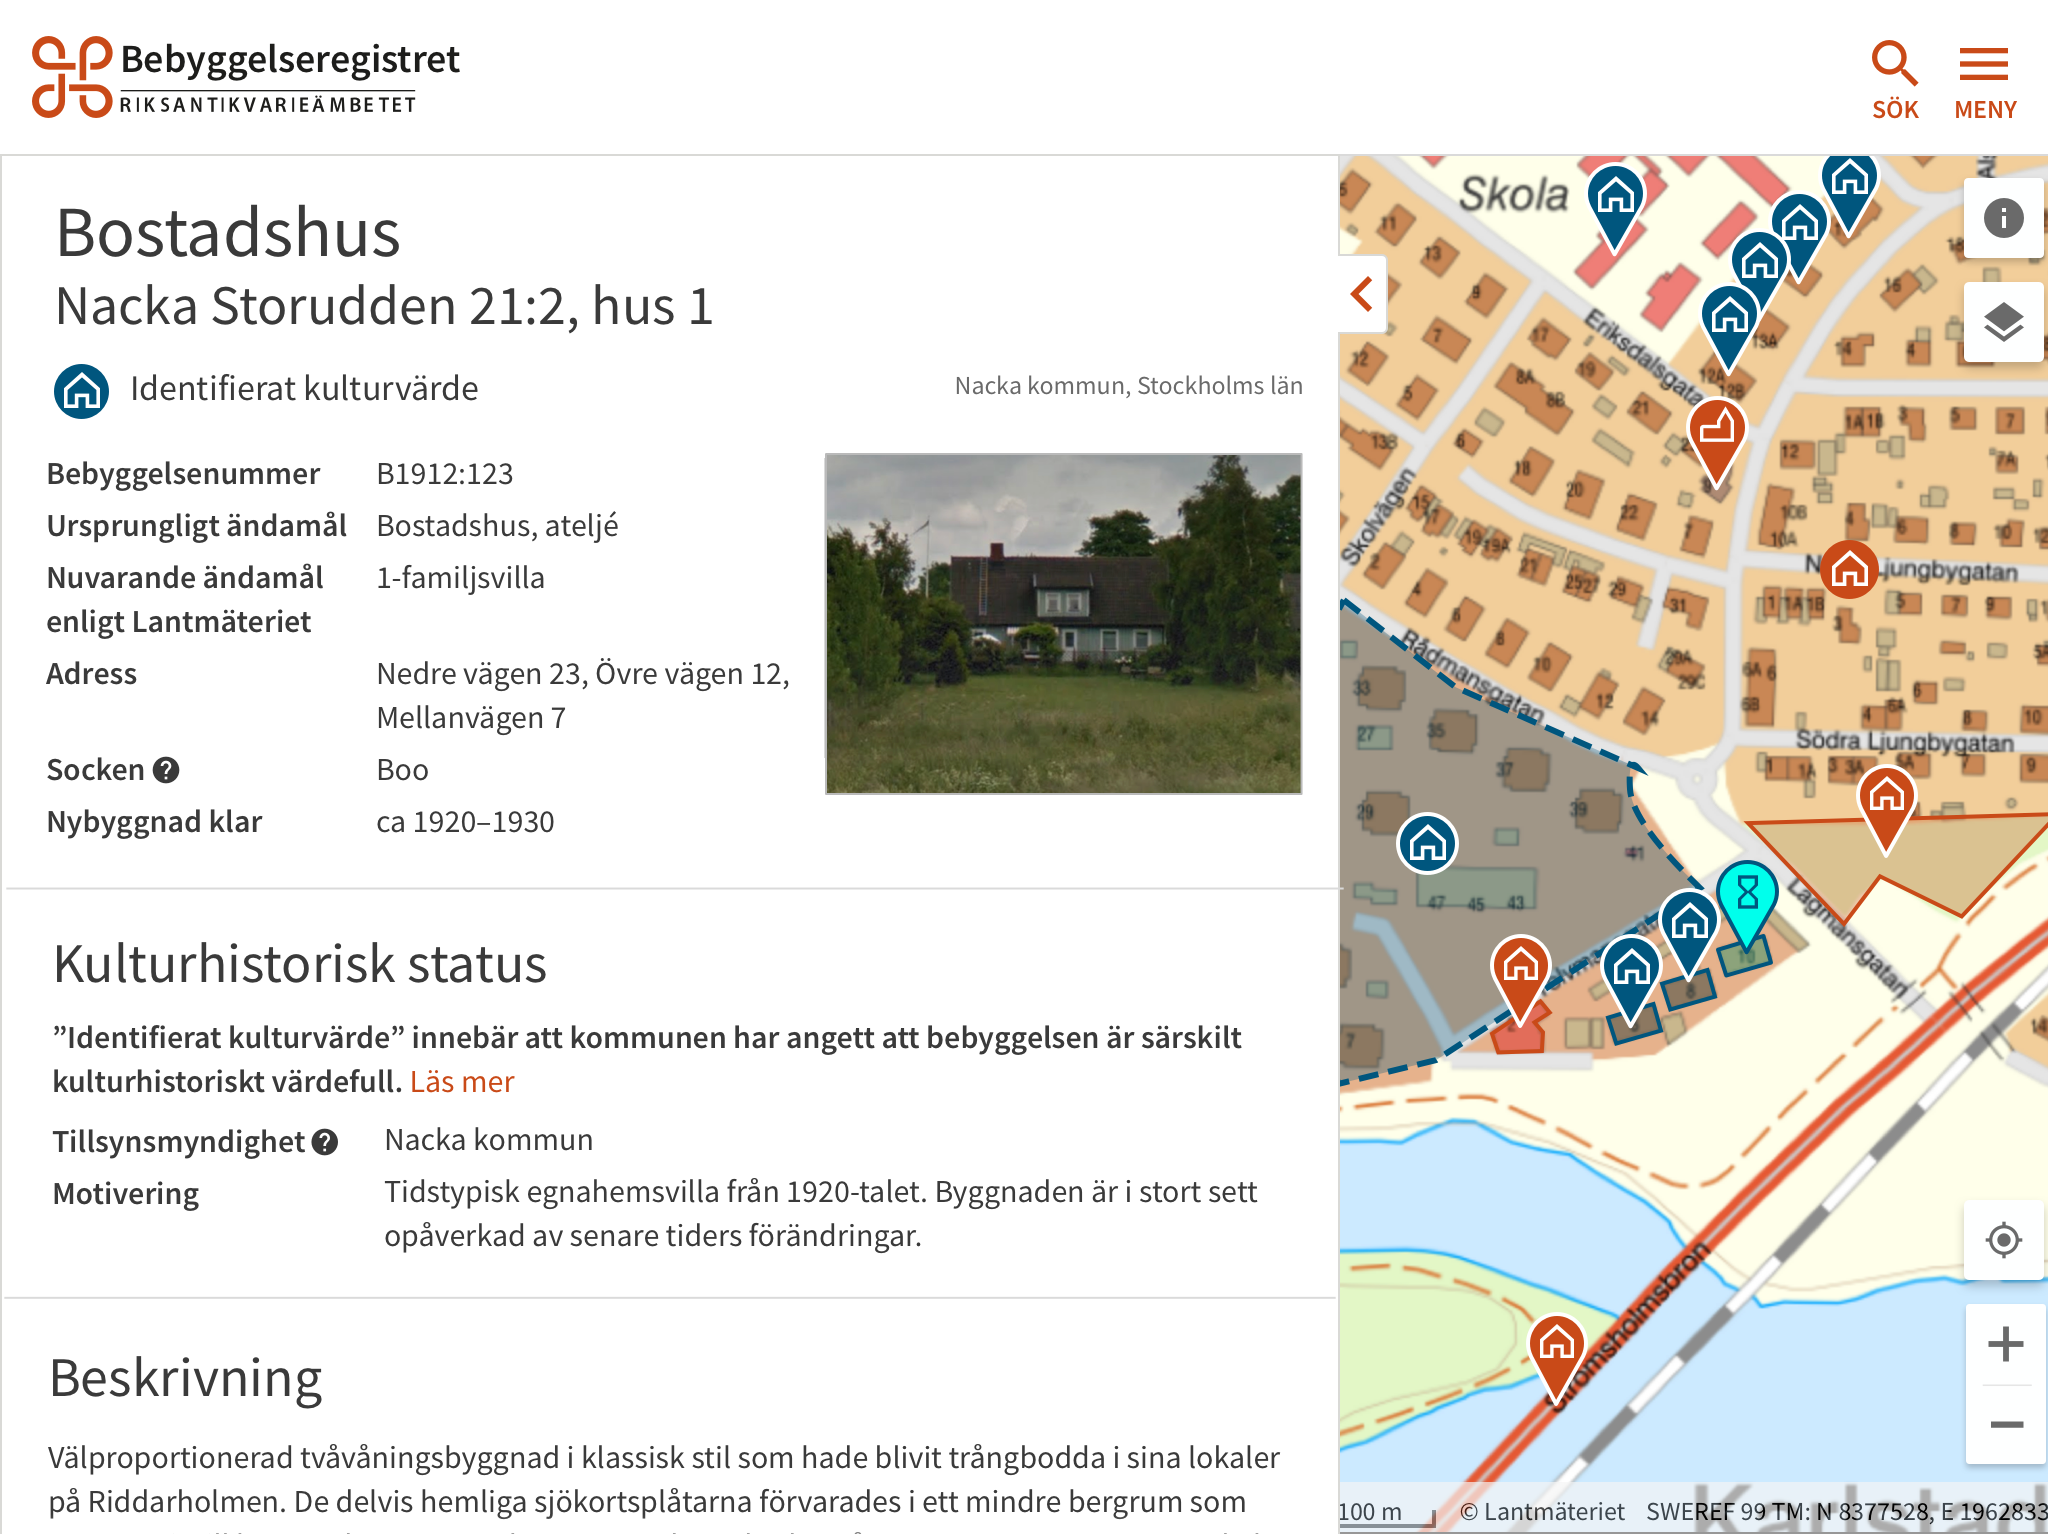 Bilden visar ett exempel på hur information och bilder visas i det nya registret för bebyggelse.